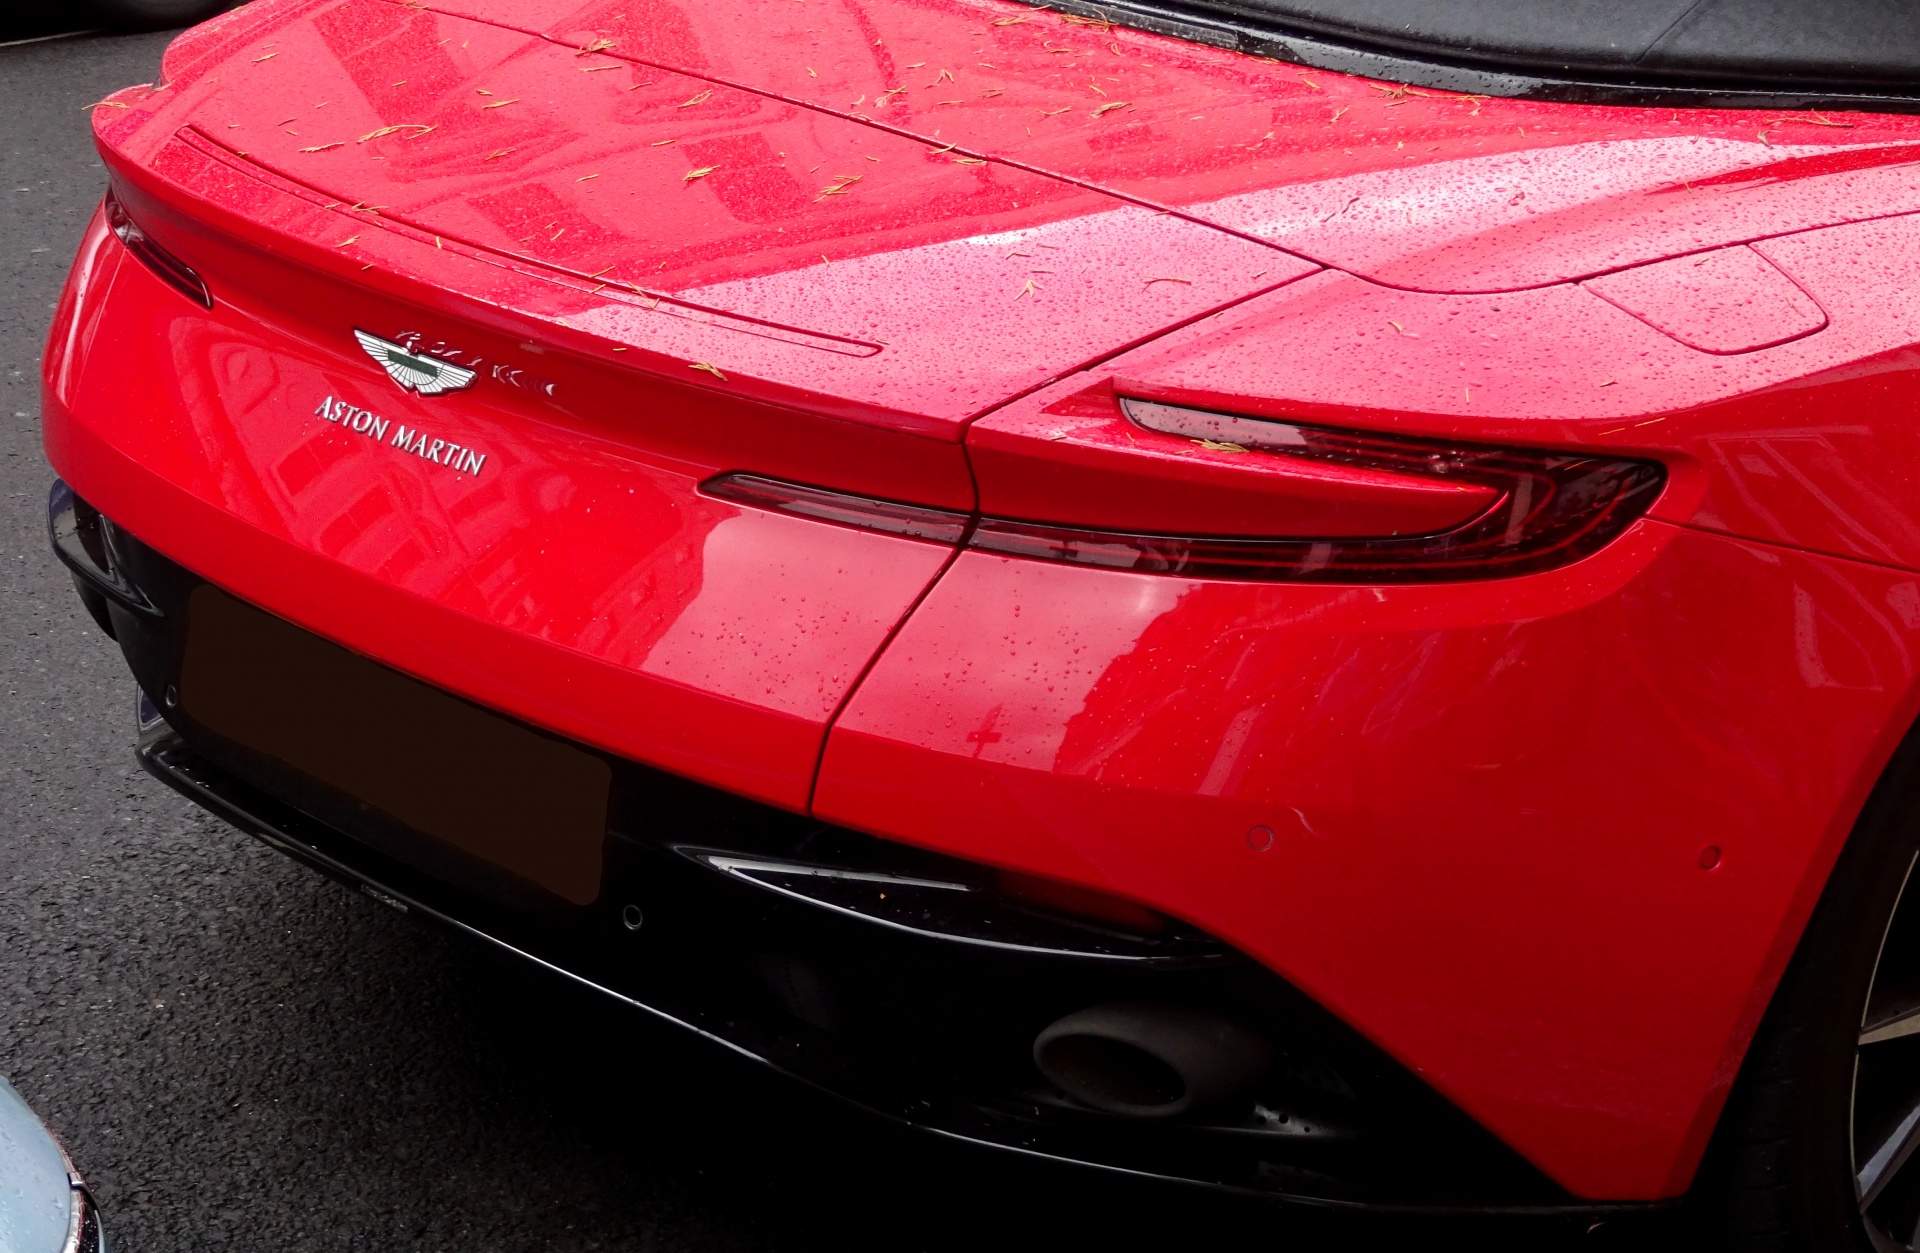 Red Convertible Aston Martin Rear